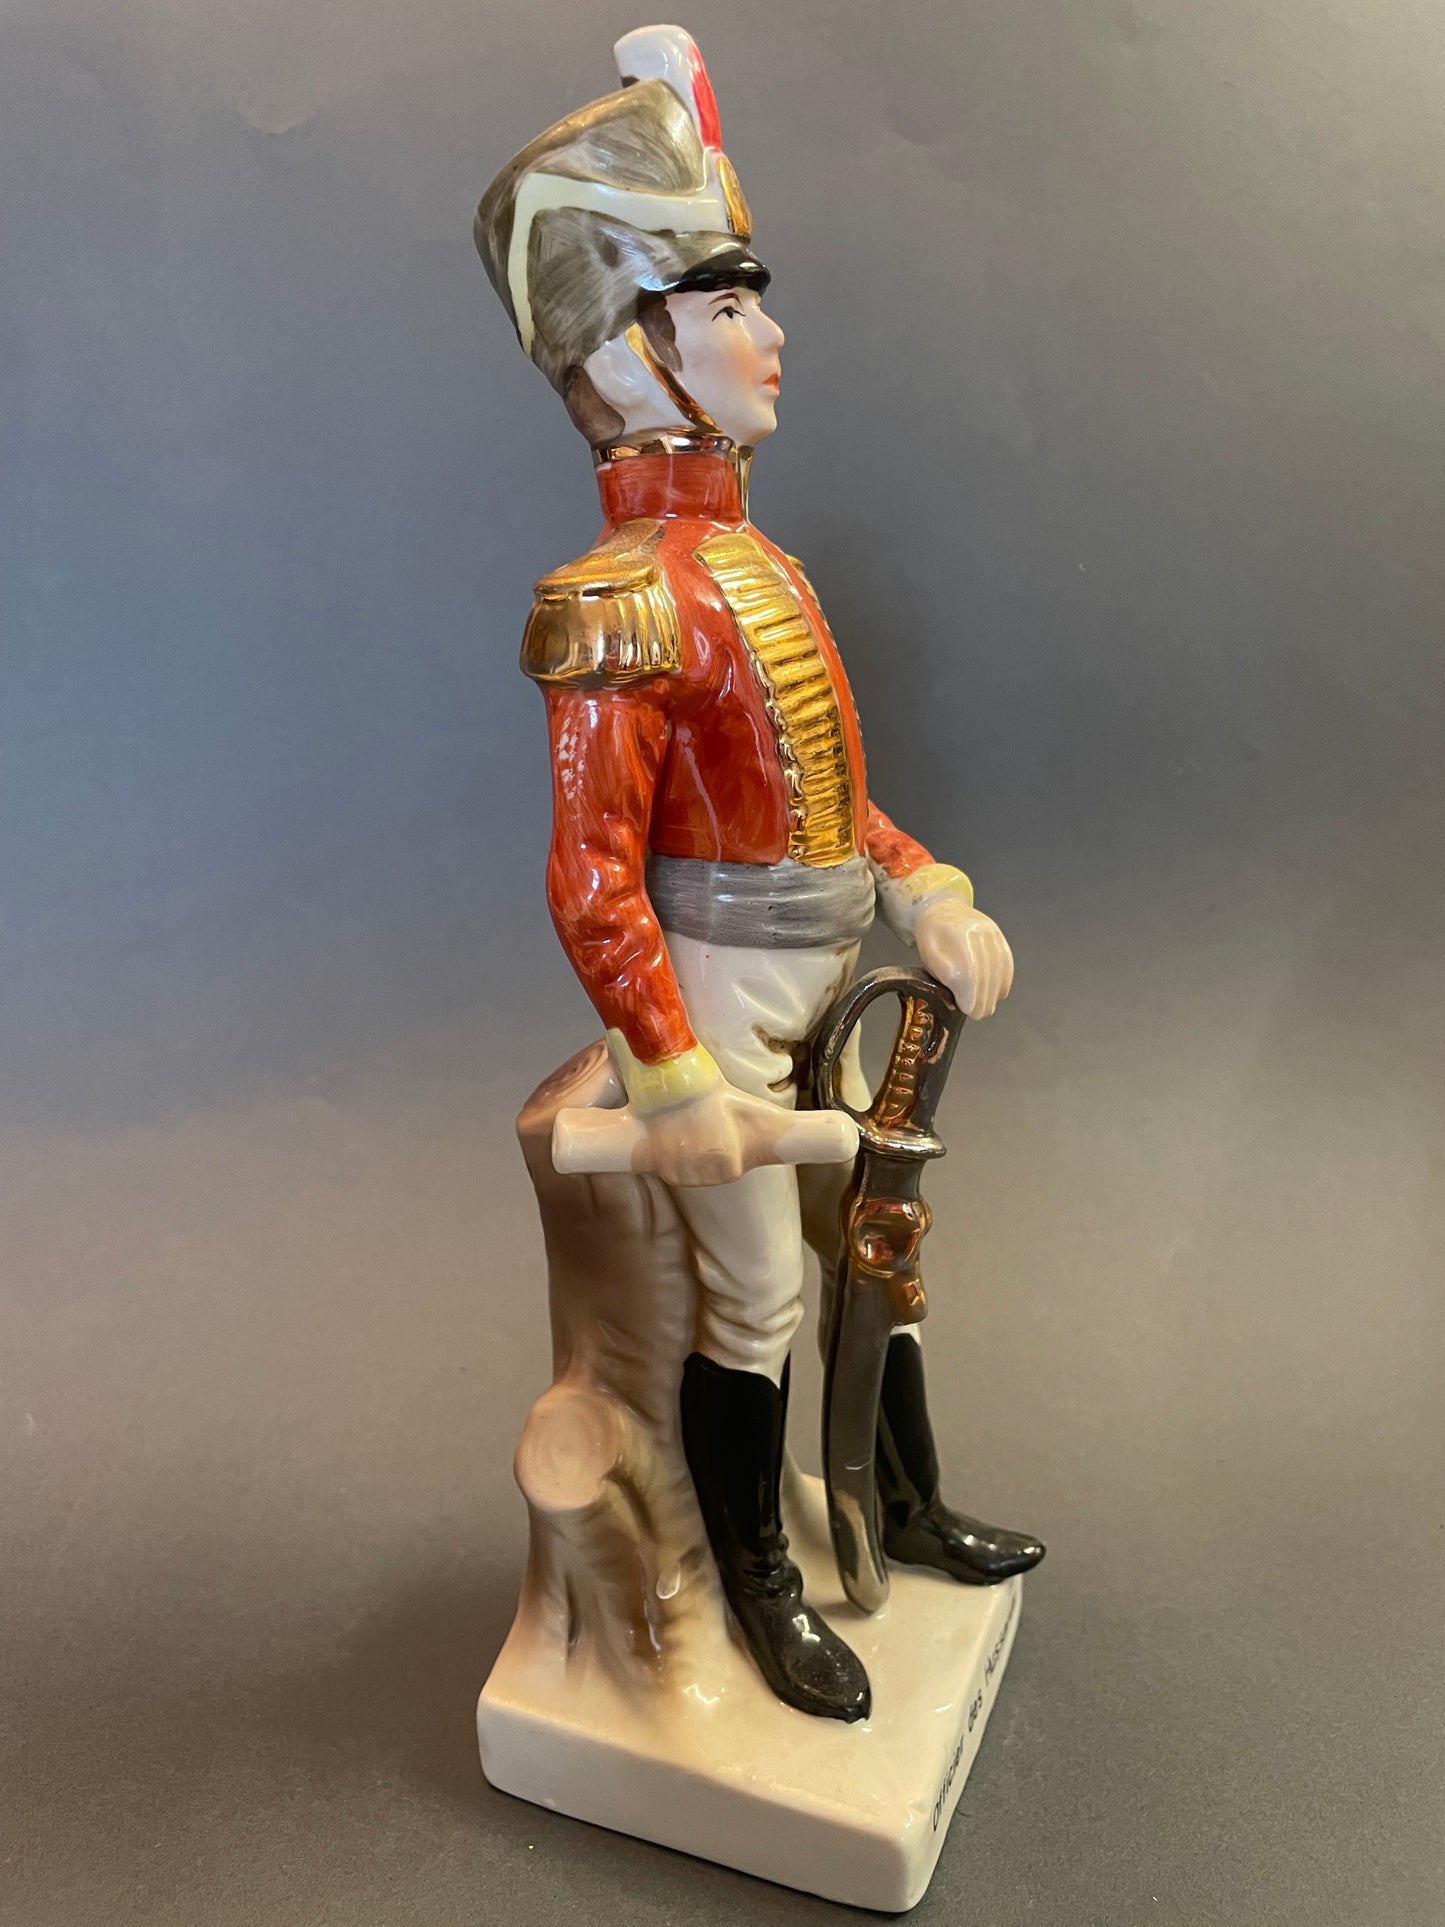 Porcelaine Officier des Hussards de l'armée Napoléonienne 23 cm